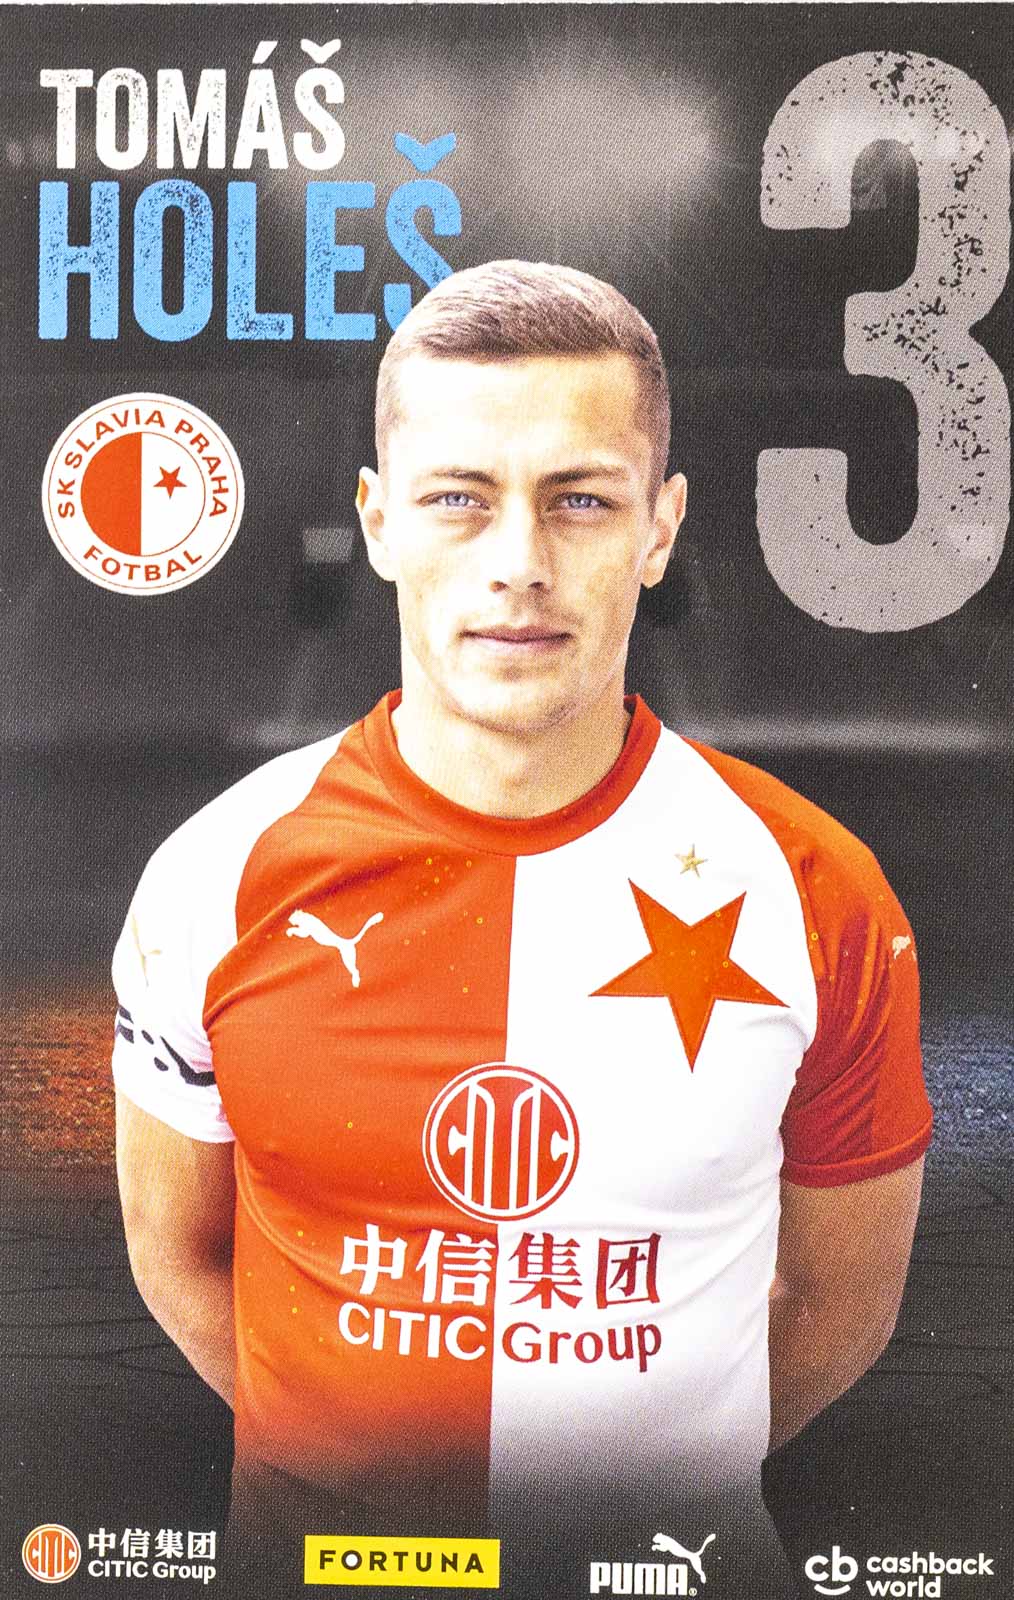 Podpisová karta, Tomáš Holeš, SK Slavia Praha